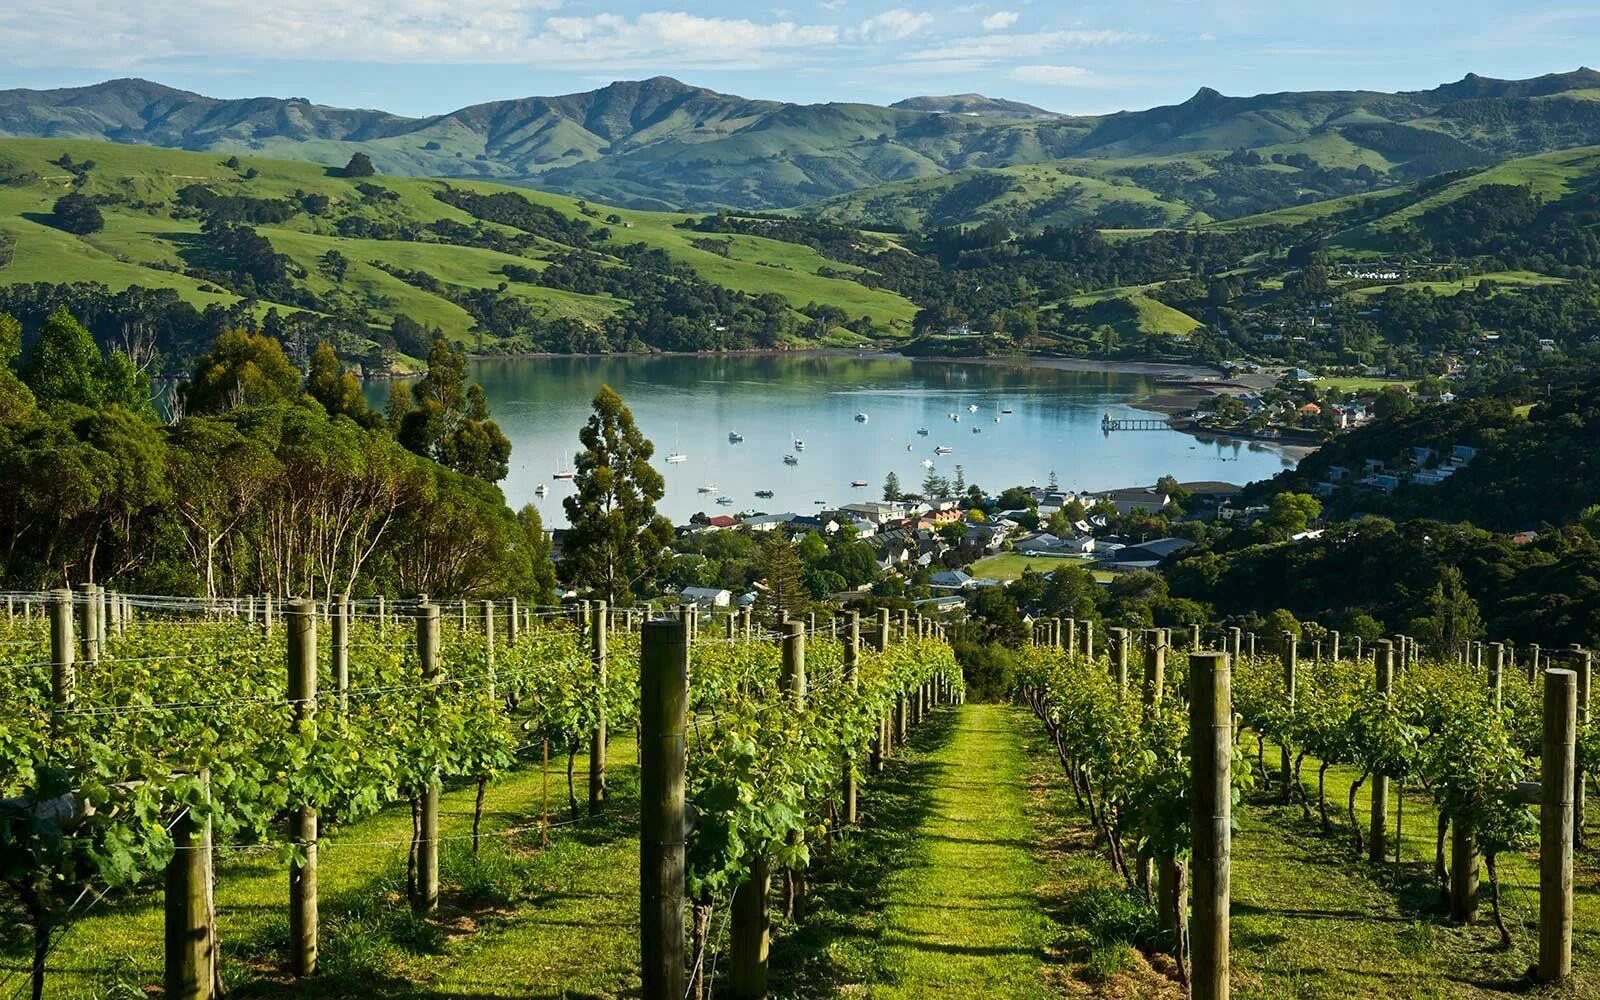 Промышленность новой зеландии. Виноградники Мальборо новая Зеландия. Долина Мальборо новая Зеландия. Марлборо (Marlborough, новая Зеландия) виноградники. Новая Зеландия регион Мальборо вино.